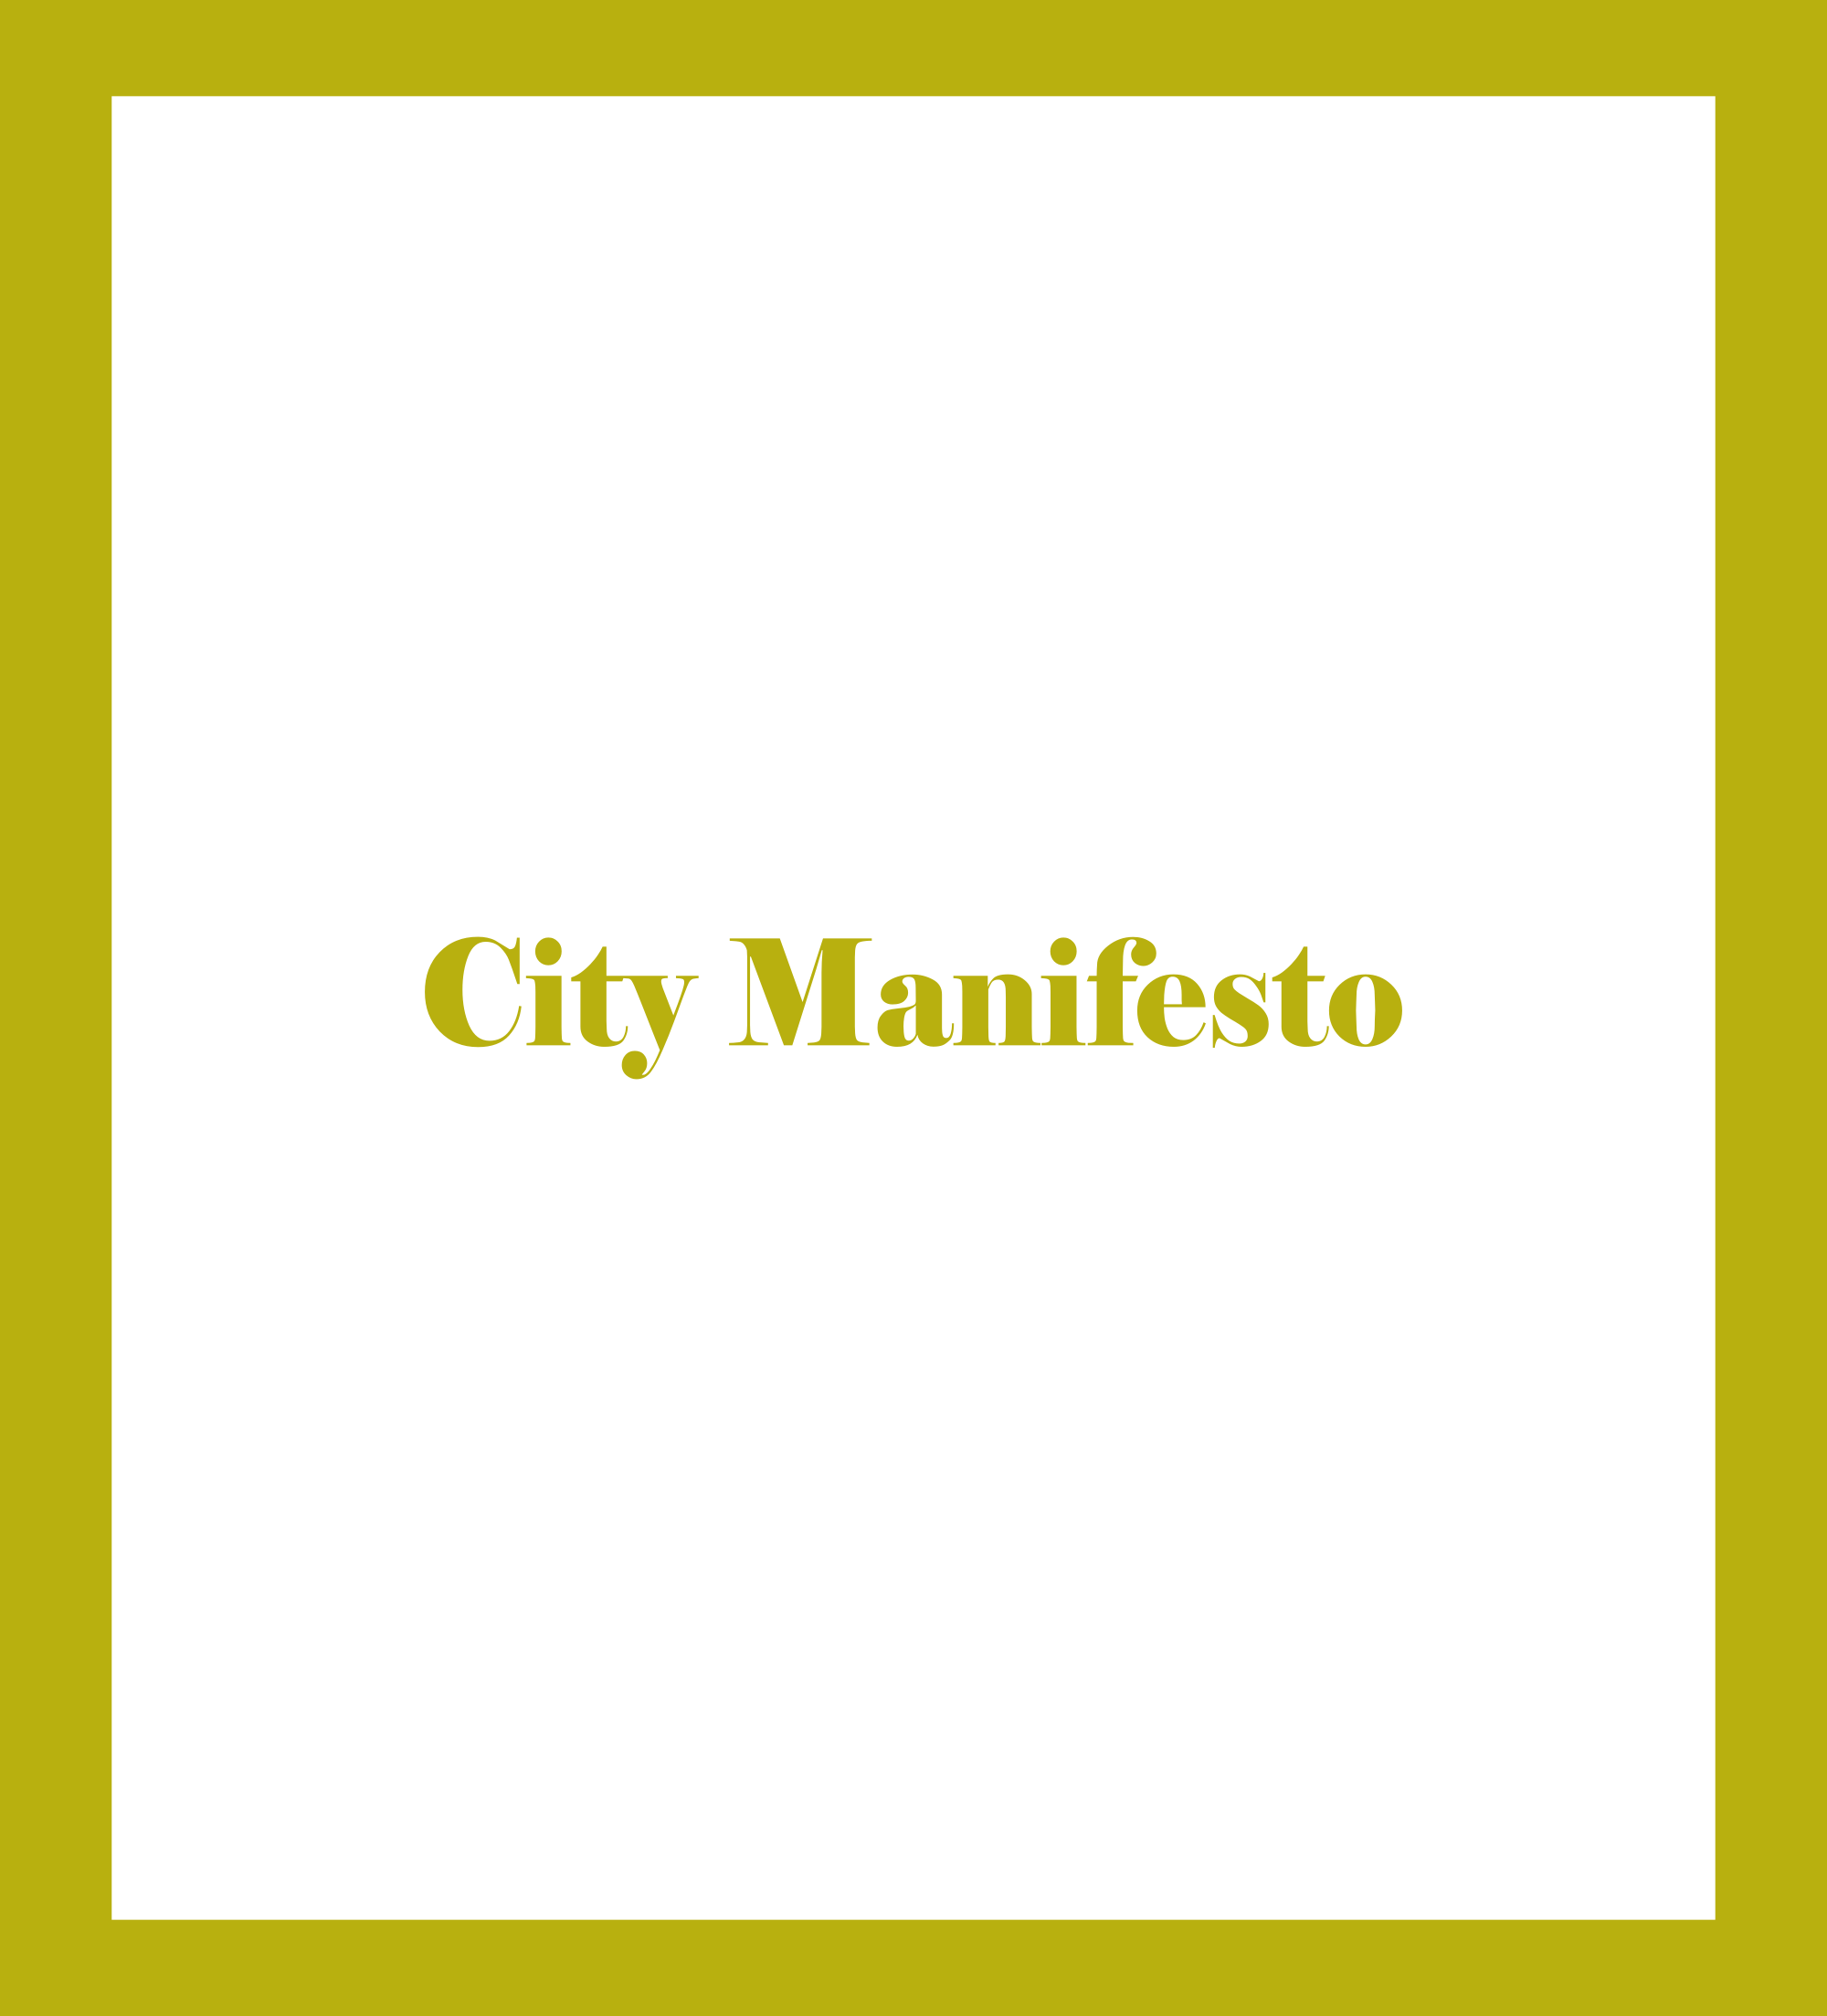 City Manifesto